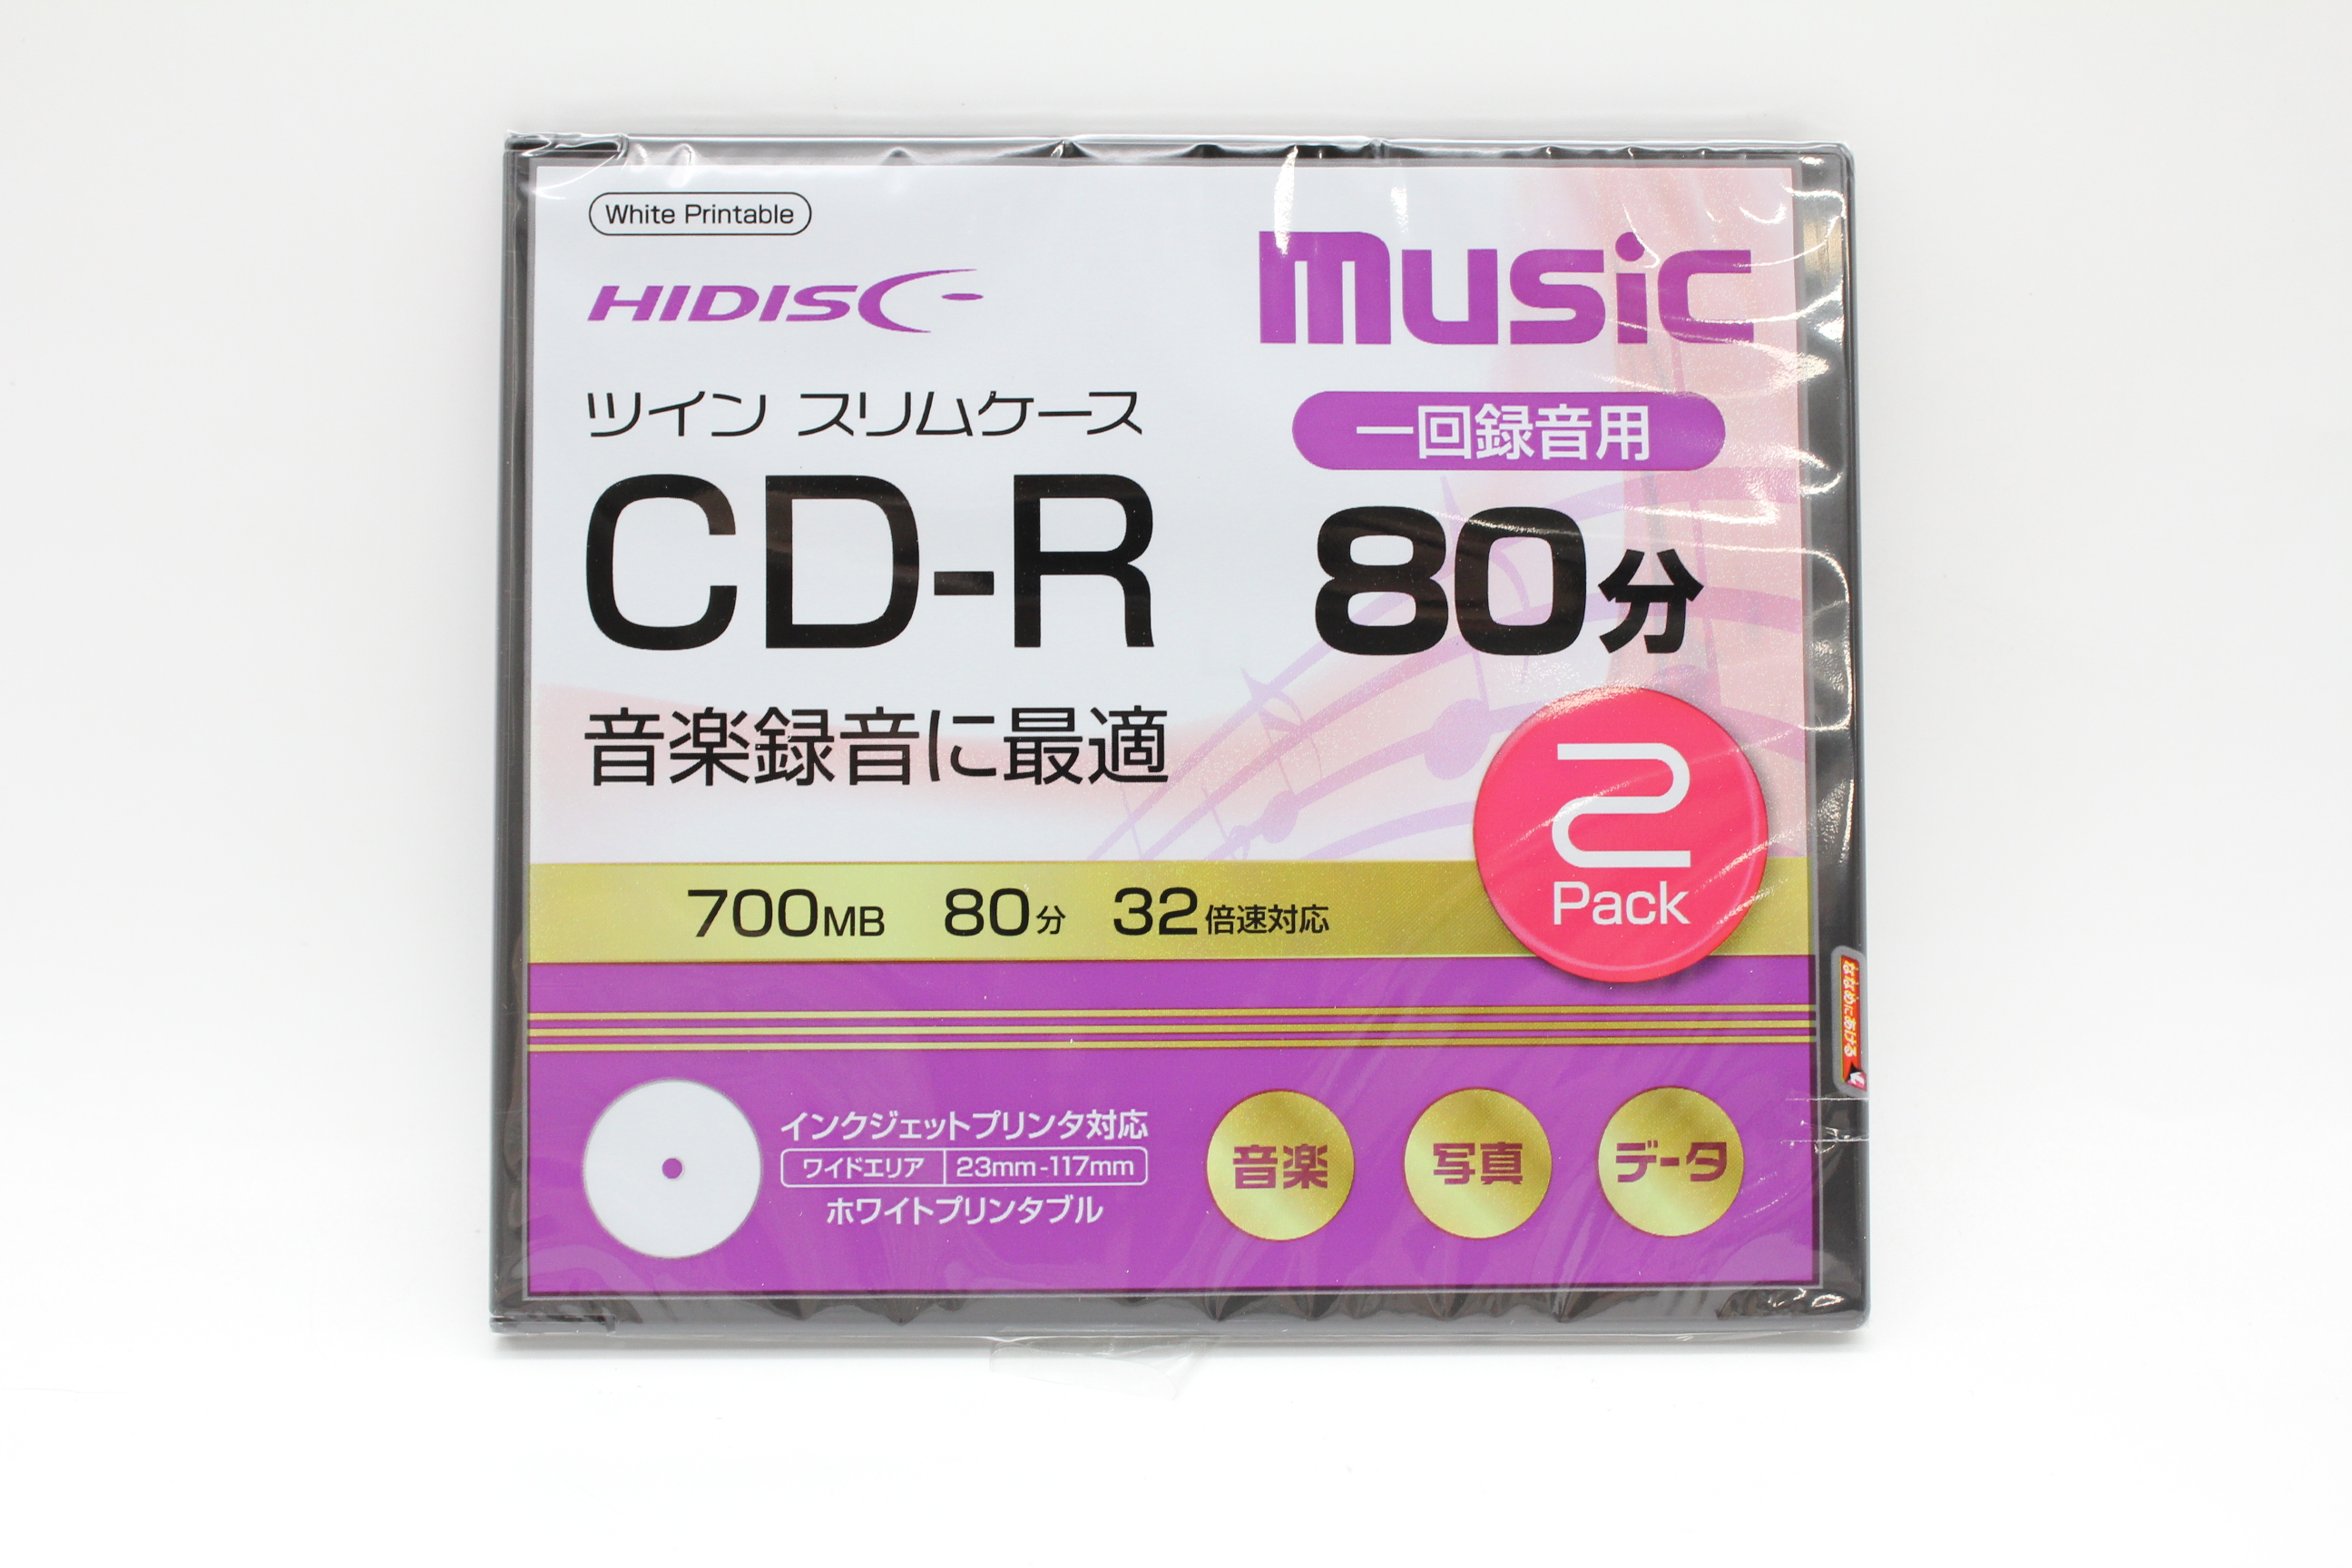 CD-R 80分 32倍速音楽用2枚入